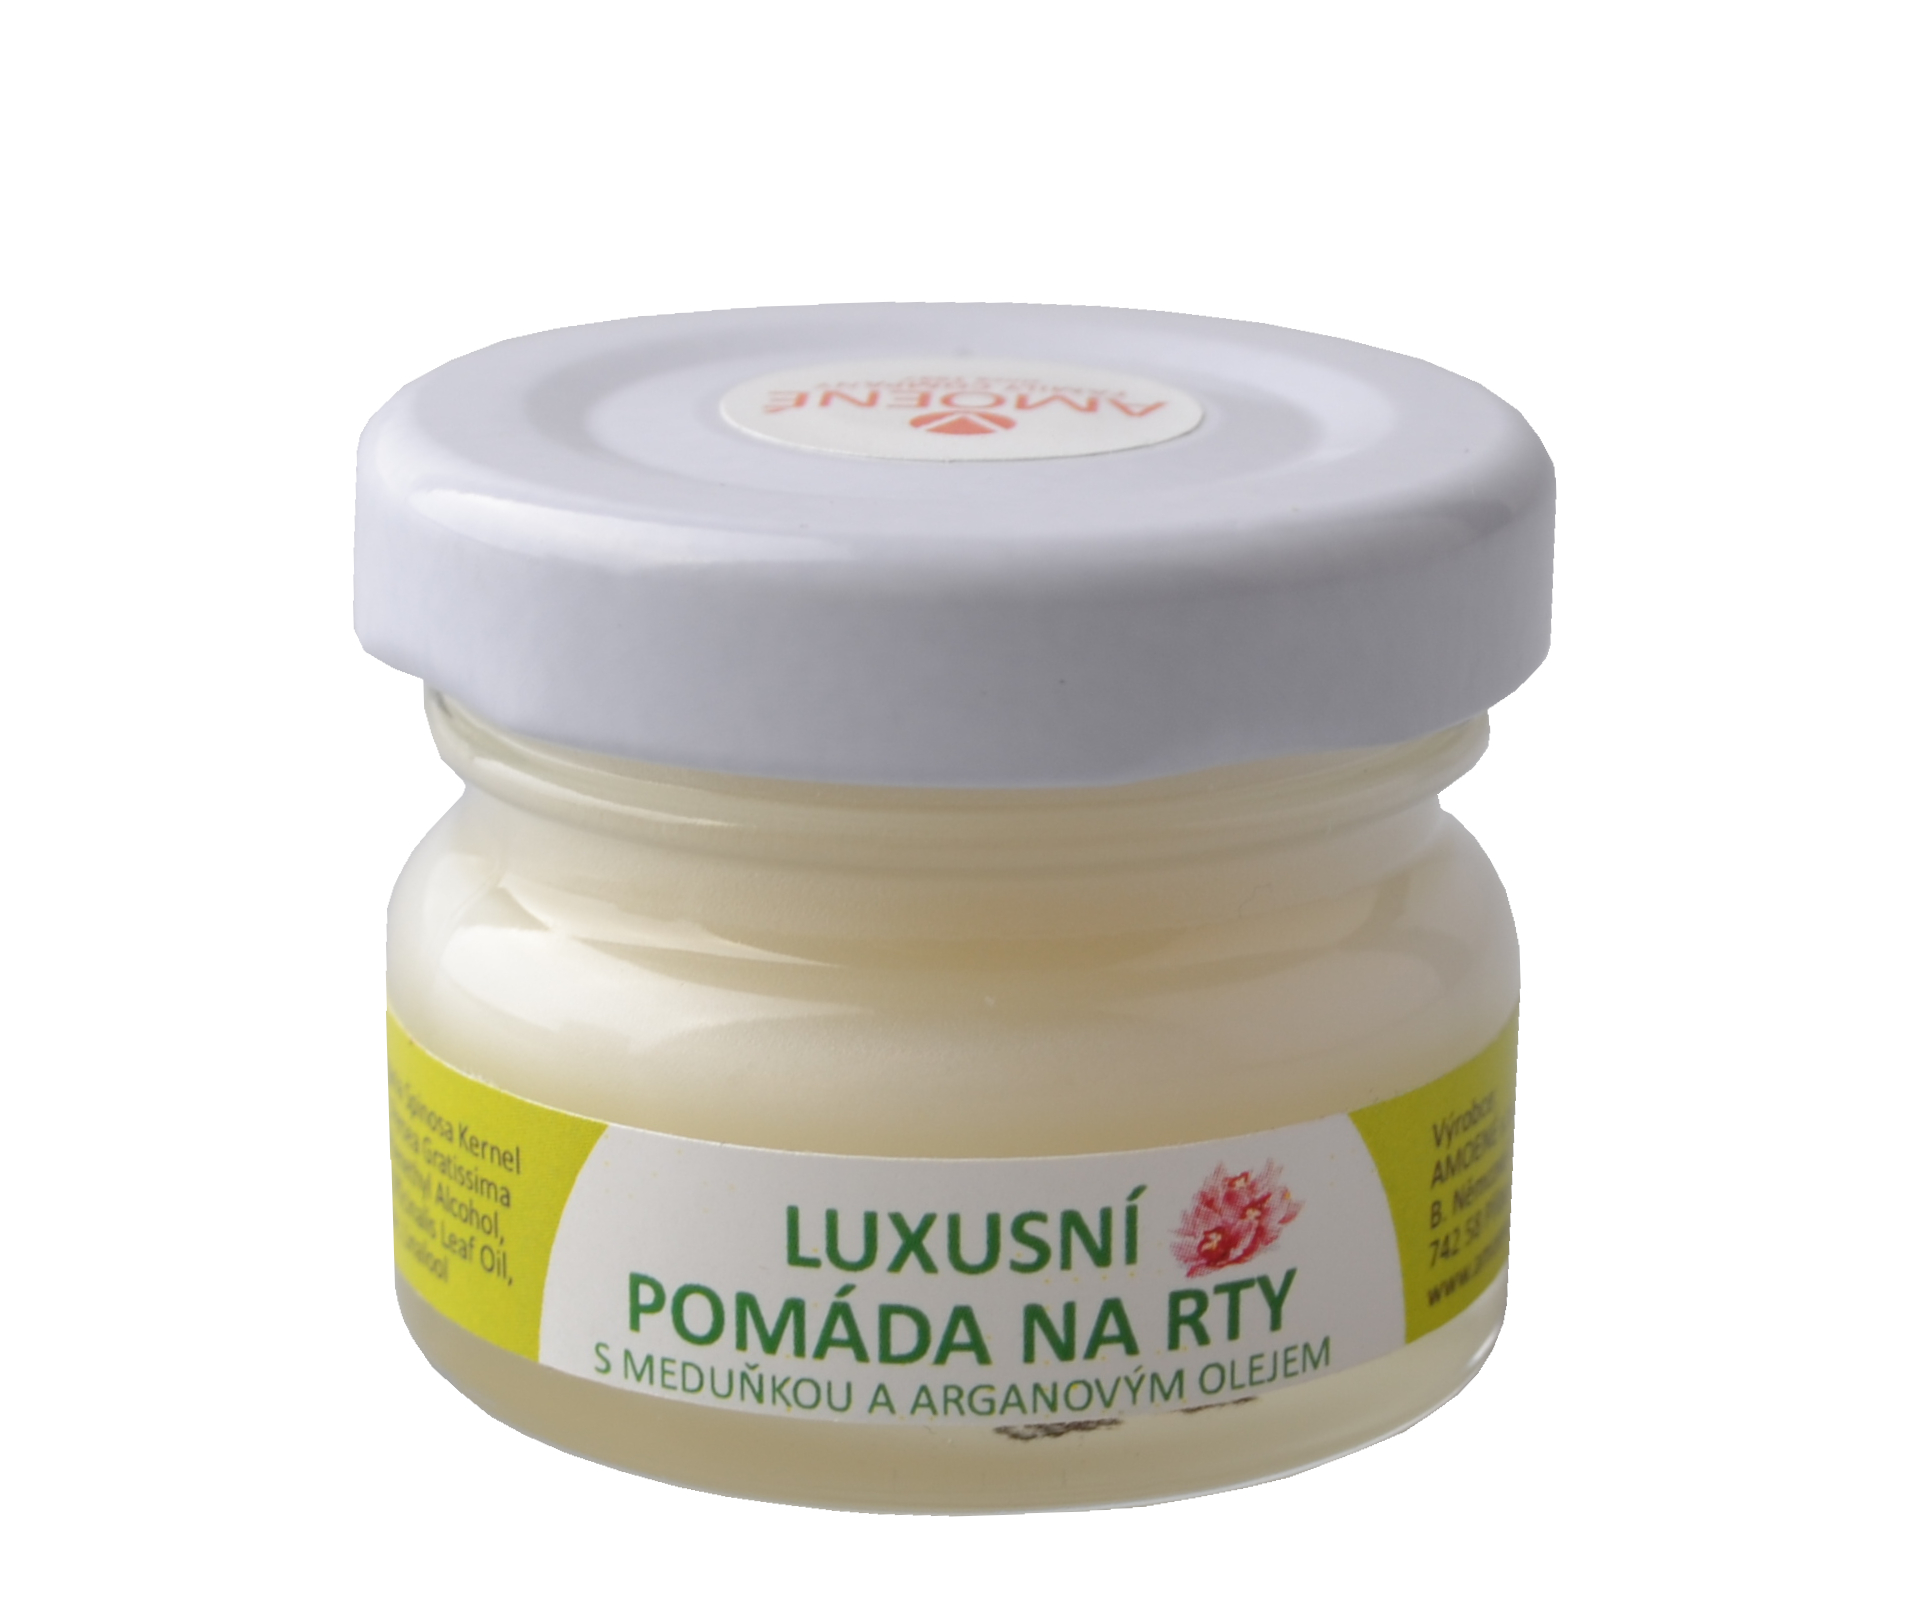 Luxusní pomáda na rty s meduňkou a arganovým olejem Amoené - 30 ml (0128400M30)